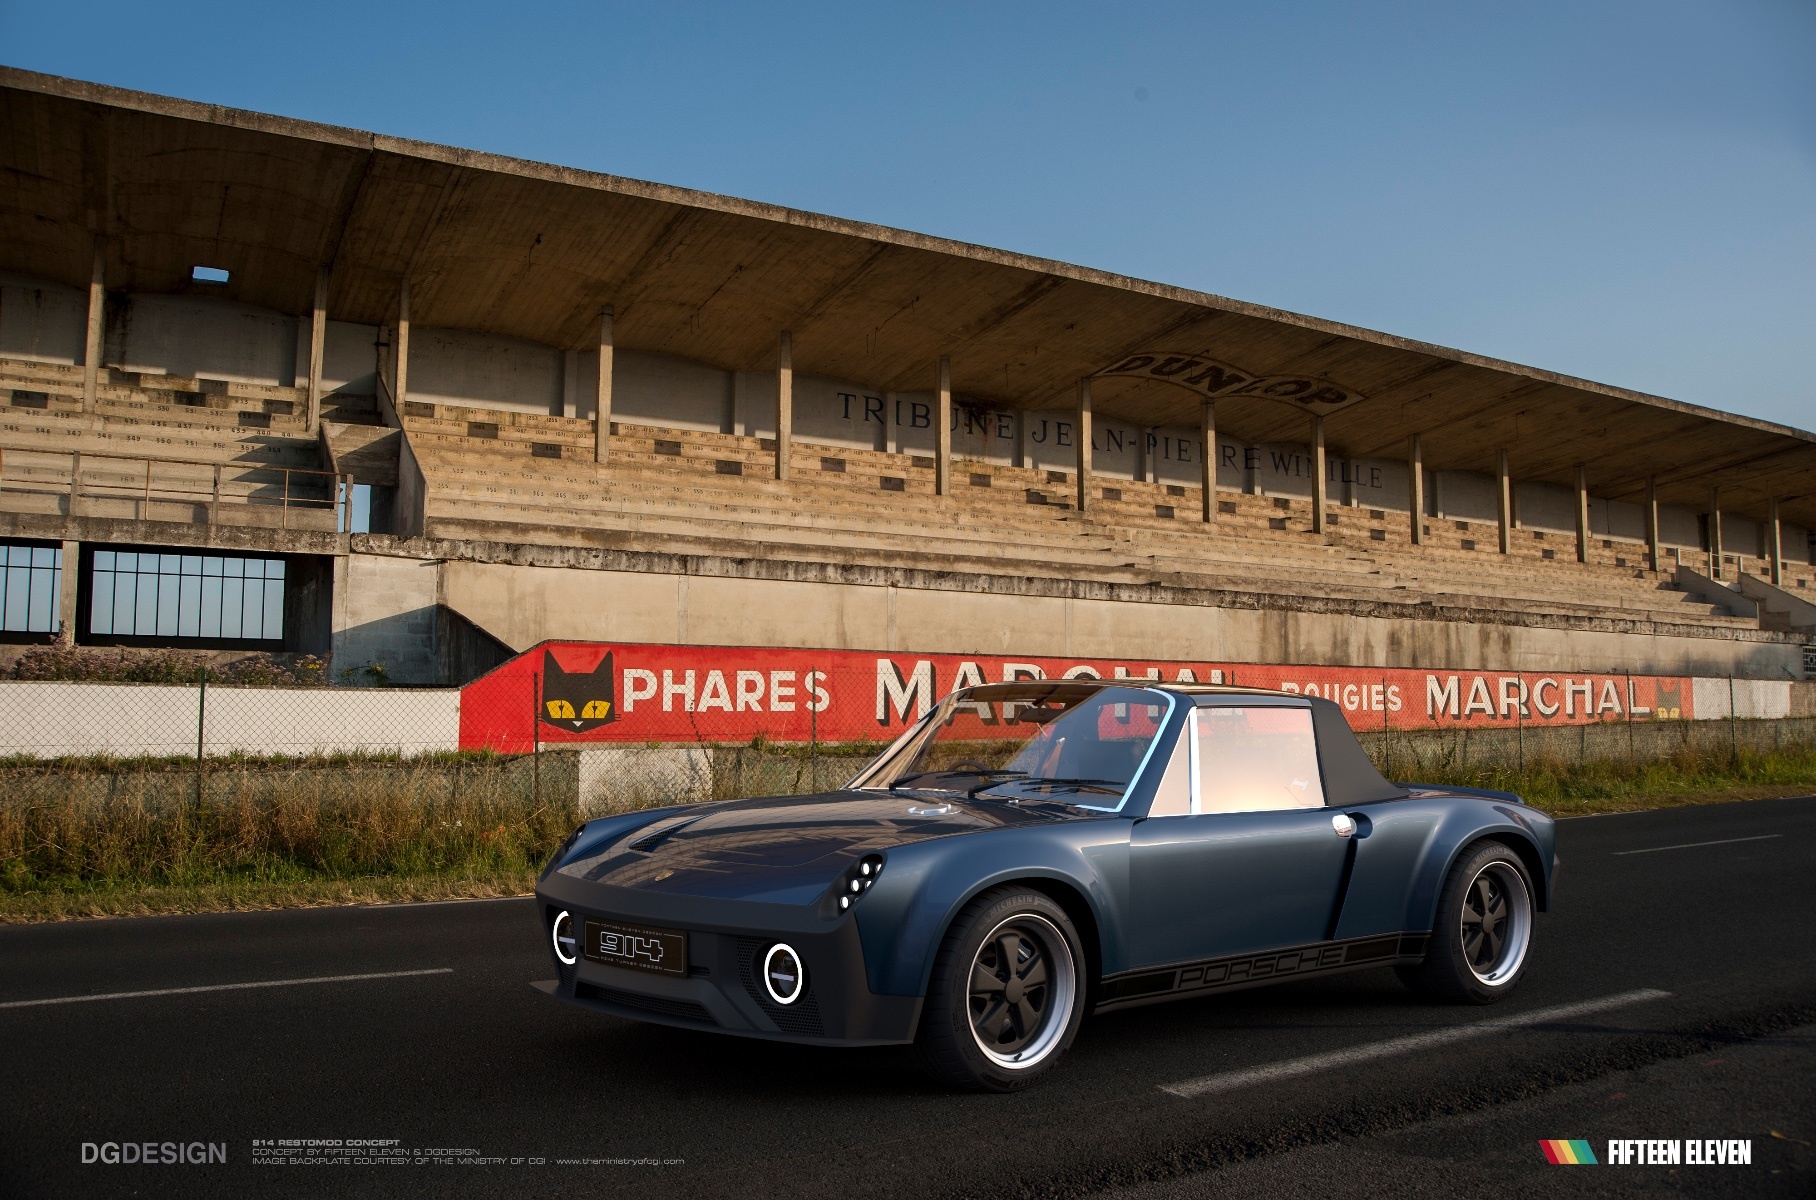 Спорткару Porsche из 1970-х дадут новую жизнь